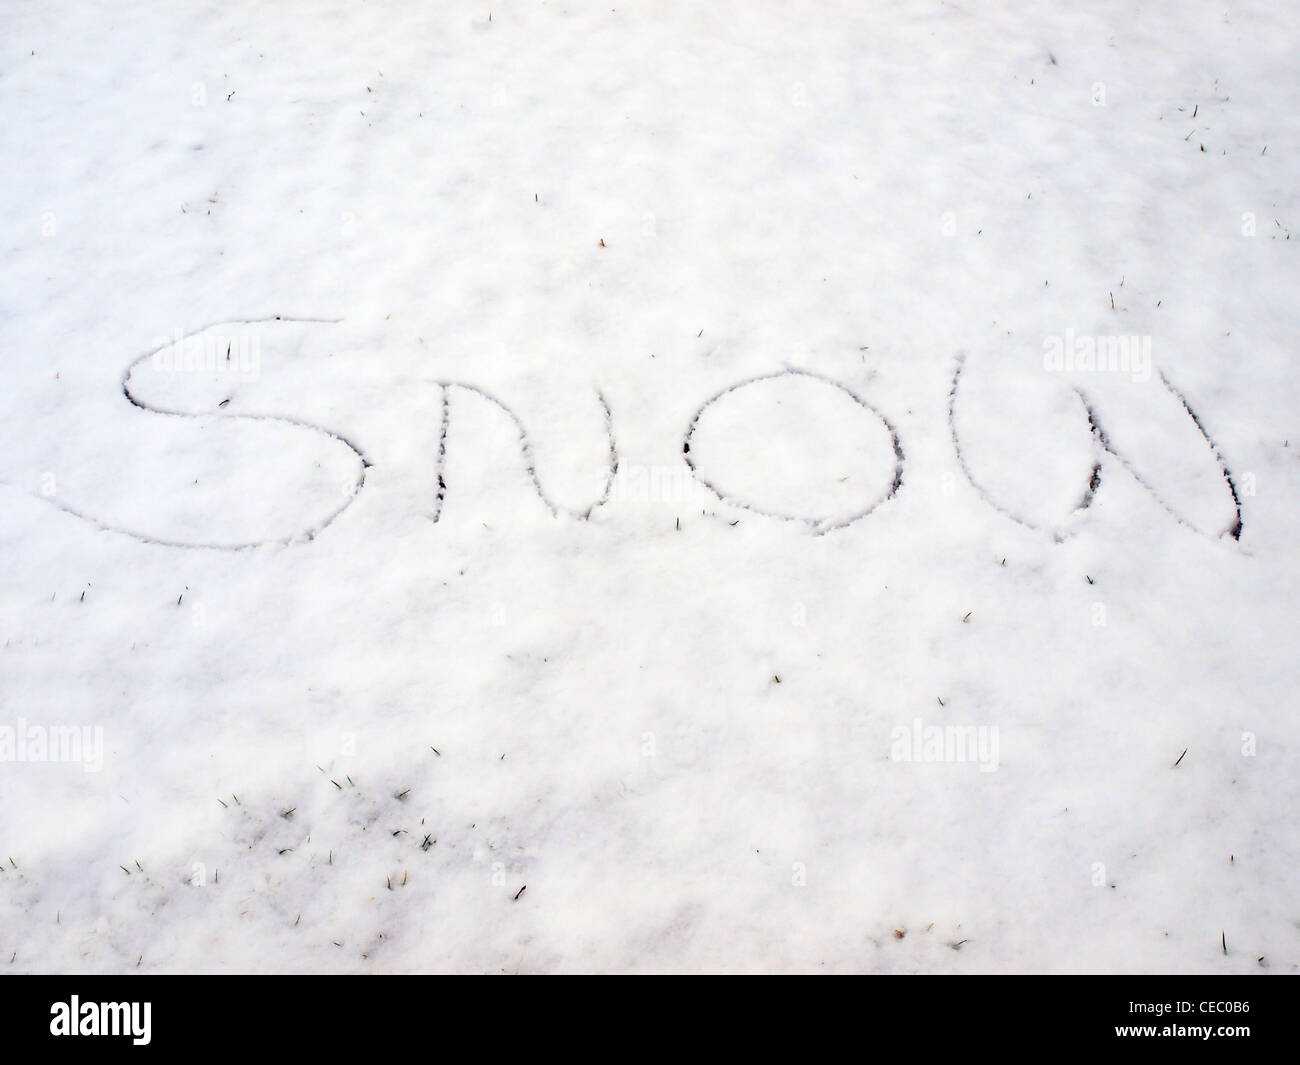 Das Wort "Schnee" in eine Decke von Schnee geschrieben. Mitcham, London 5. Februar 2012 Stockfoto